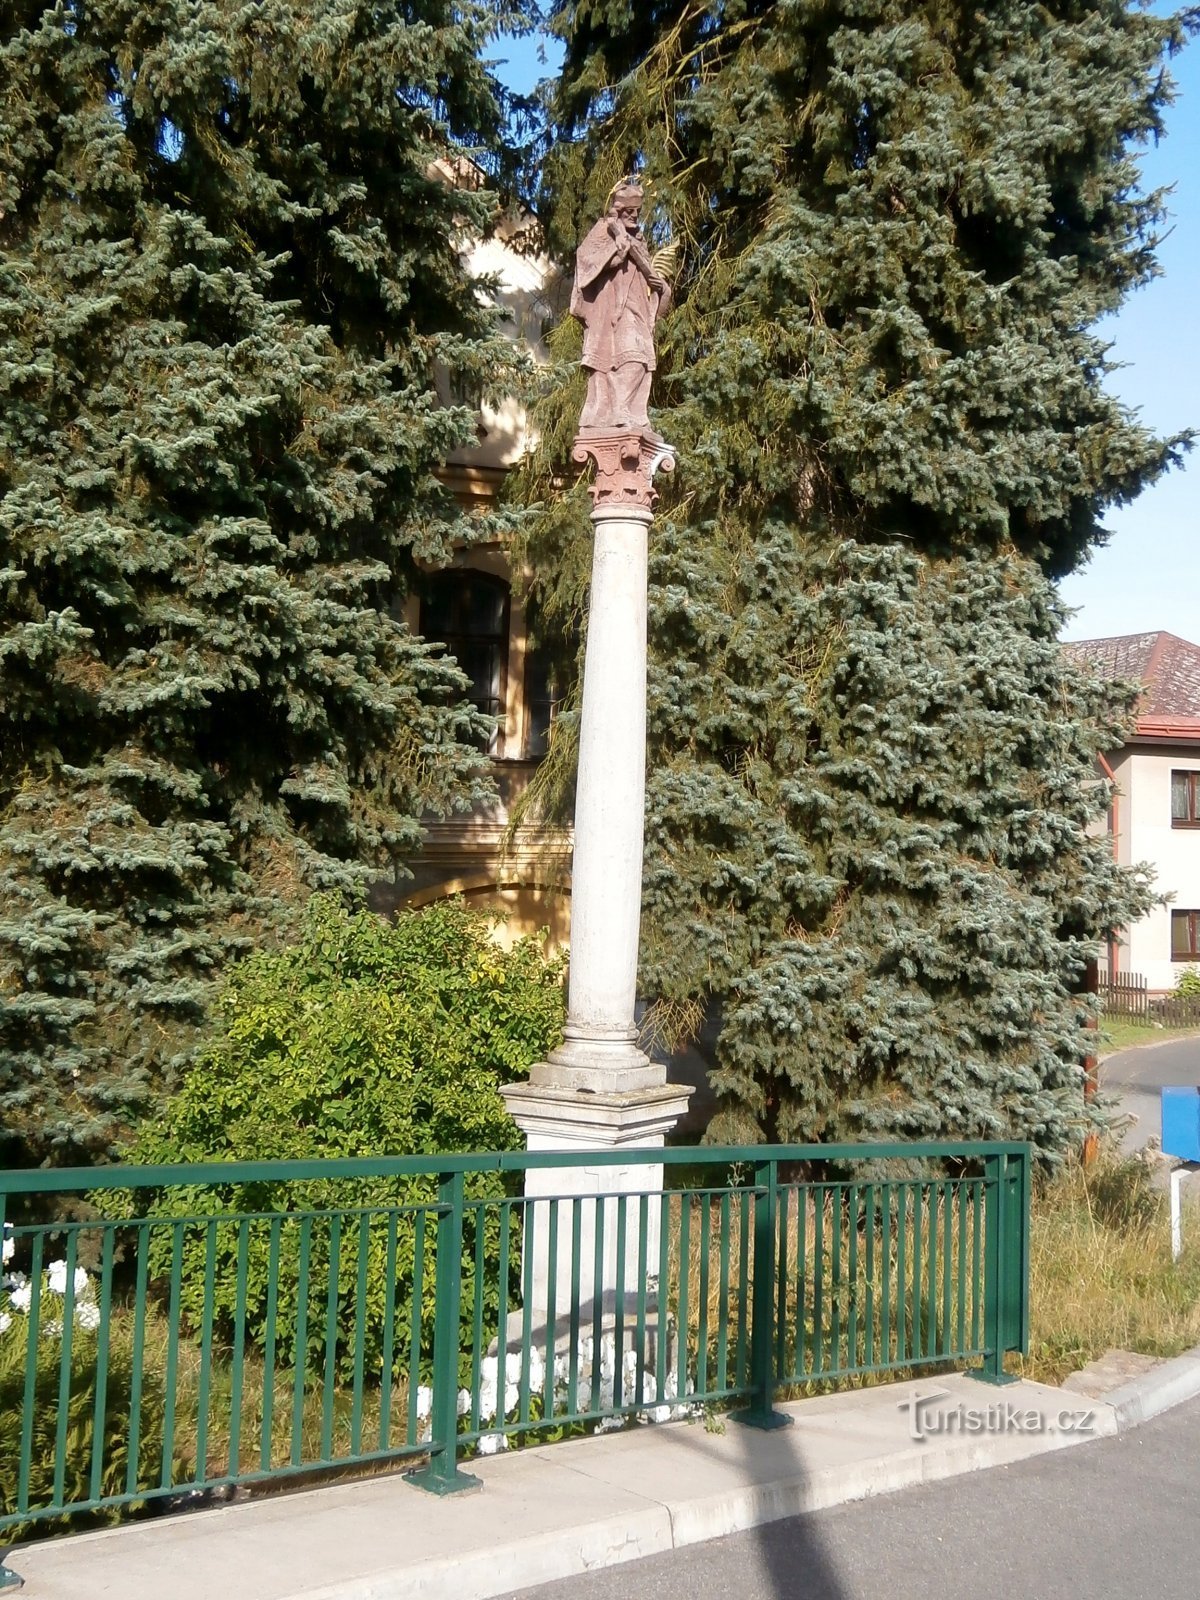 estatua de san Juan de Nepomuco detrás de la barandilla del puente cerca de Mandle (Havlovice)